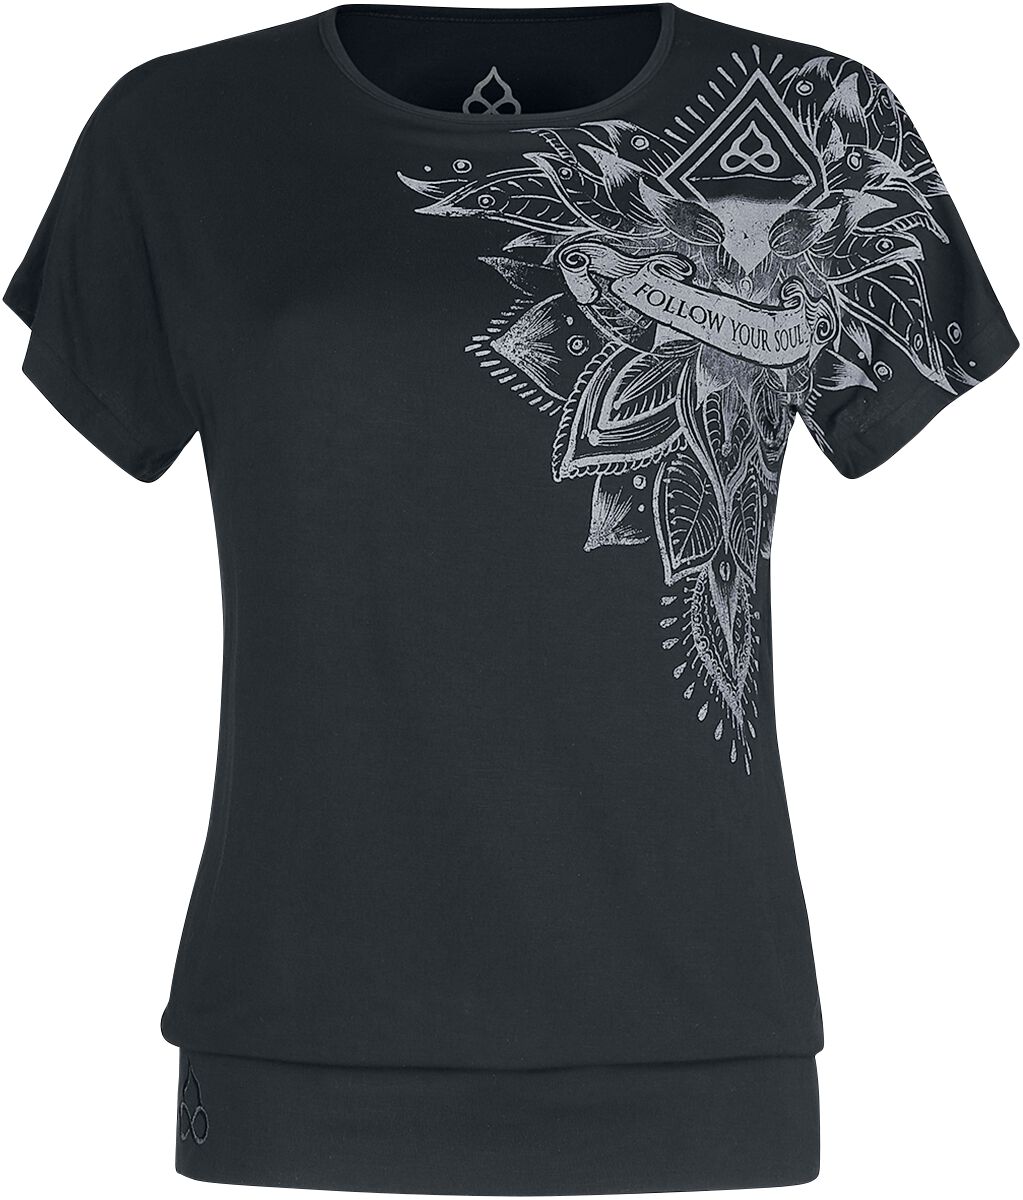 EMP Special Collection T-Shirt - Sport und Yoga - Schwarzes lockeres T-Shirt mit detailreichem Print - M bis 4XL - für Damen - Größe 3XL - schwarz